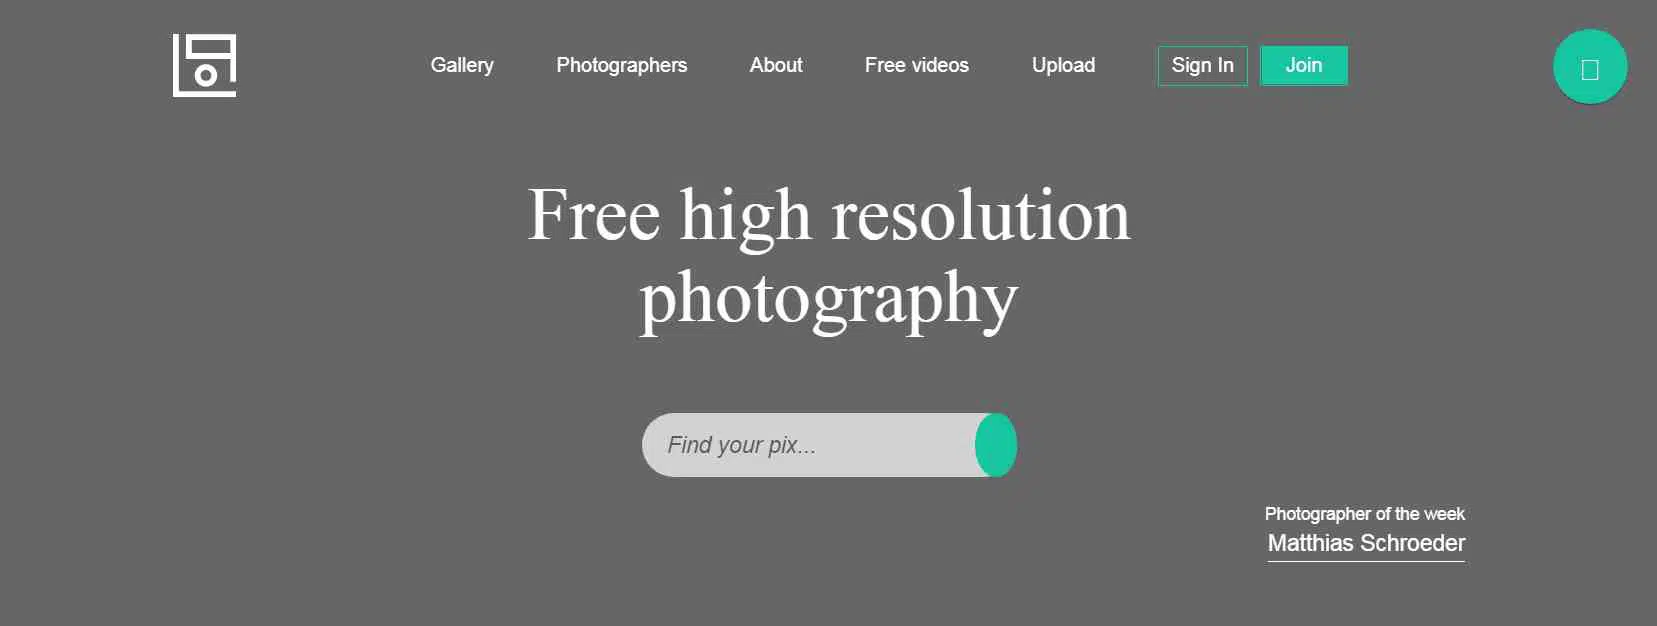 مواقع تحميل الصور بجودة عالية مجانا بدون حقوق ملكية 2